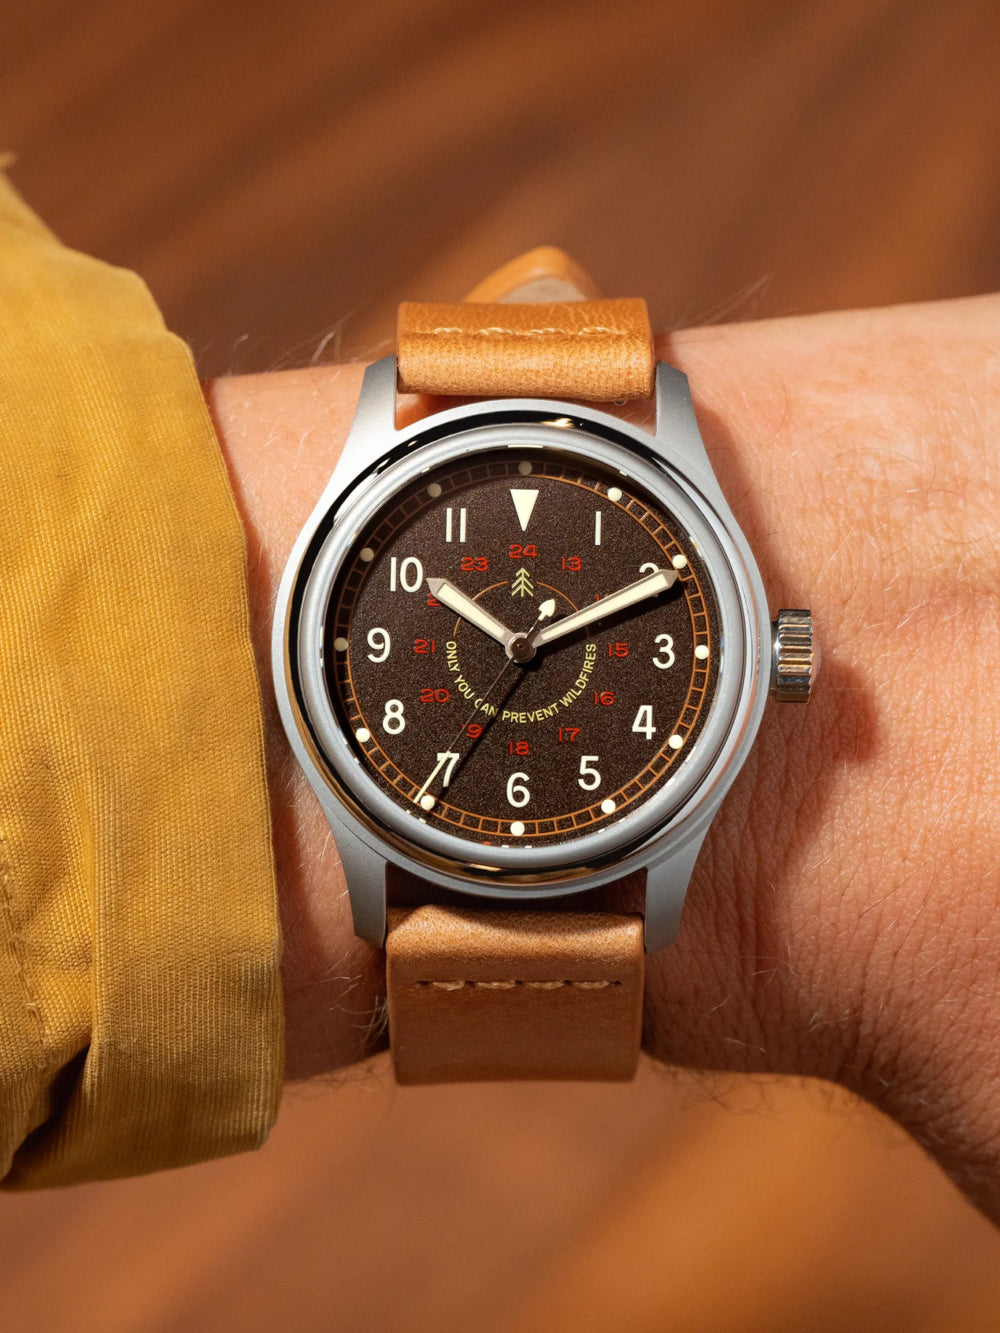 The Smokey '64 - VERO Watch Company